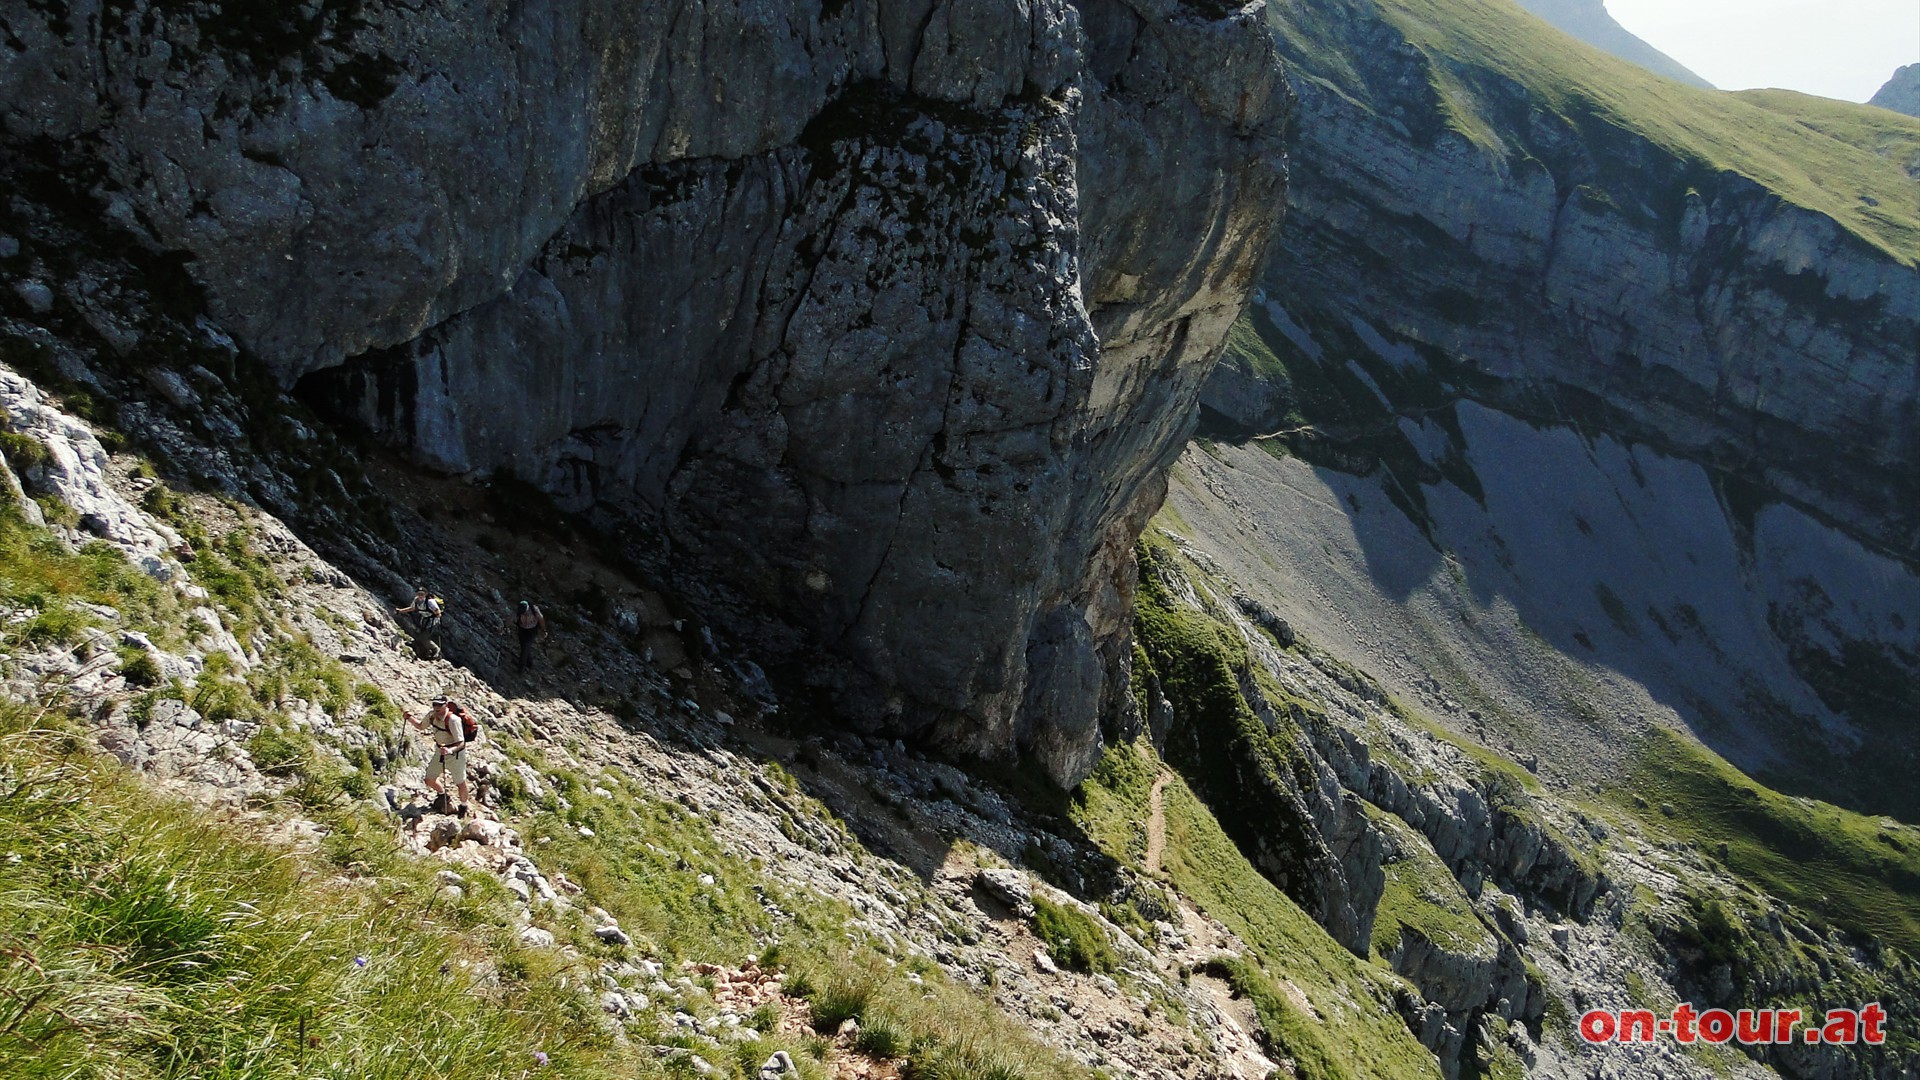 Über eine steinige Steilstufe, am westlichen Gipfelaufbau entlang, geht es weiter nach oben. Die letzten Höhenmeter dann noch am flacheren, grasigen Westhang entlang.